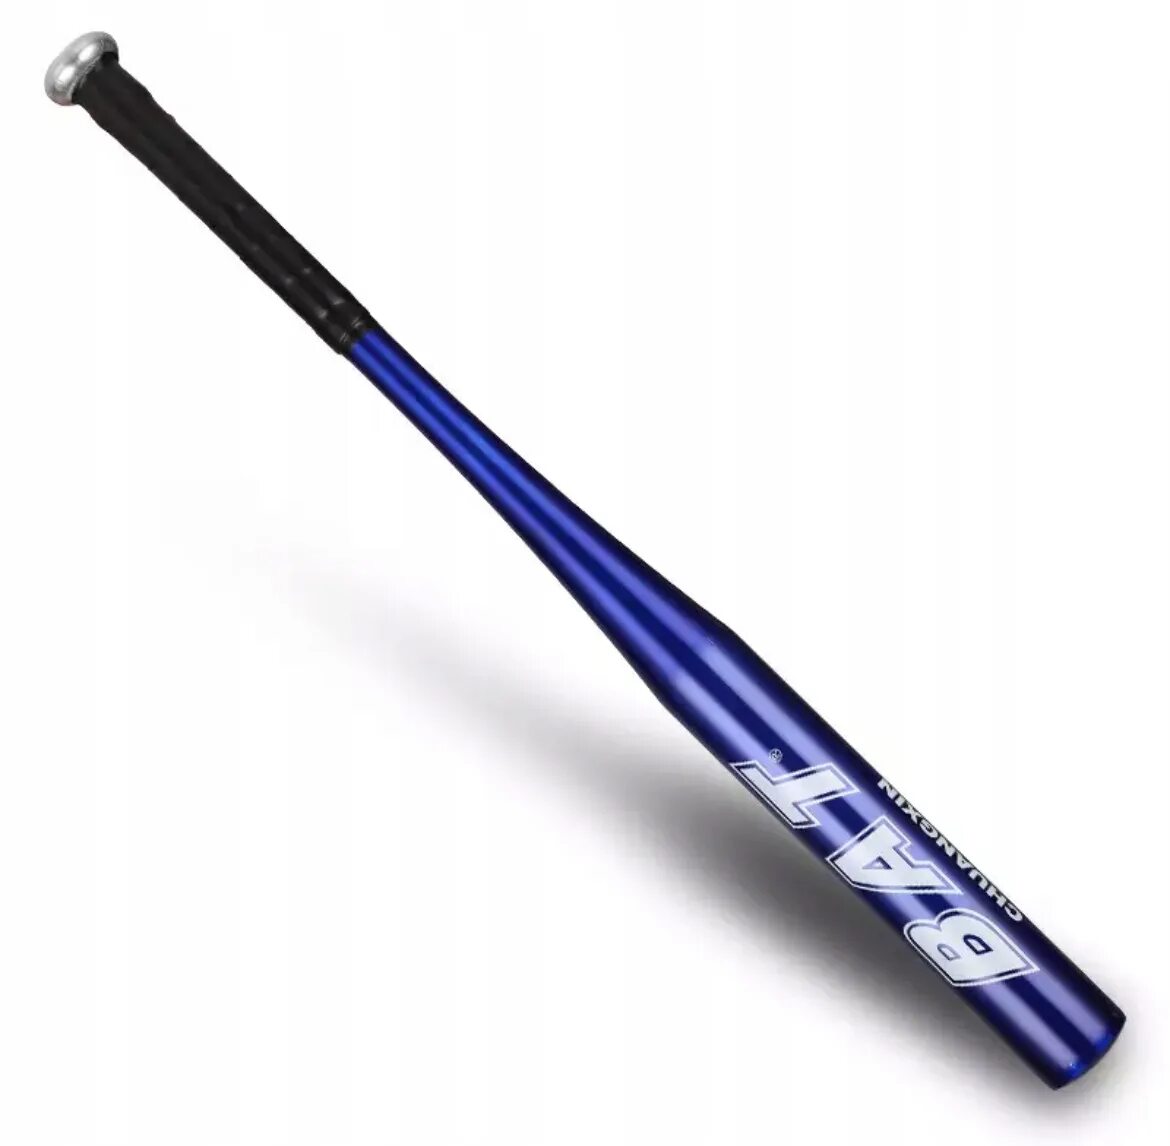 Бейсбольная бита bat small Aluminium 32 in. Бейзбольнаябита SP 70 Alloy. Бита для бейсбола bat 26 дюймов. Бита бейсбольная, алюминиевая e33525 красная 25". Бита купить екатеринбург